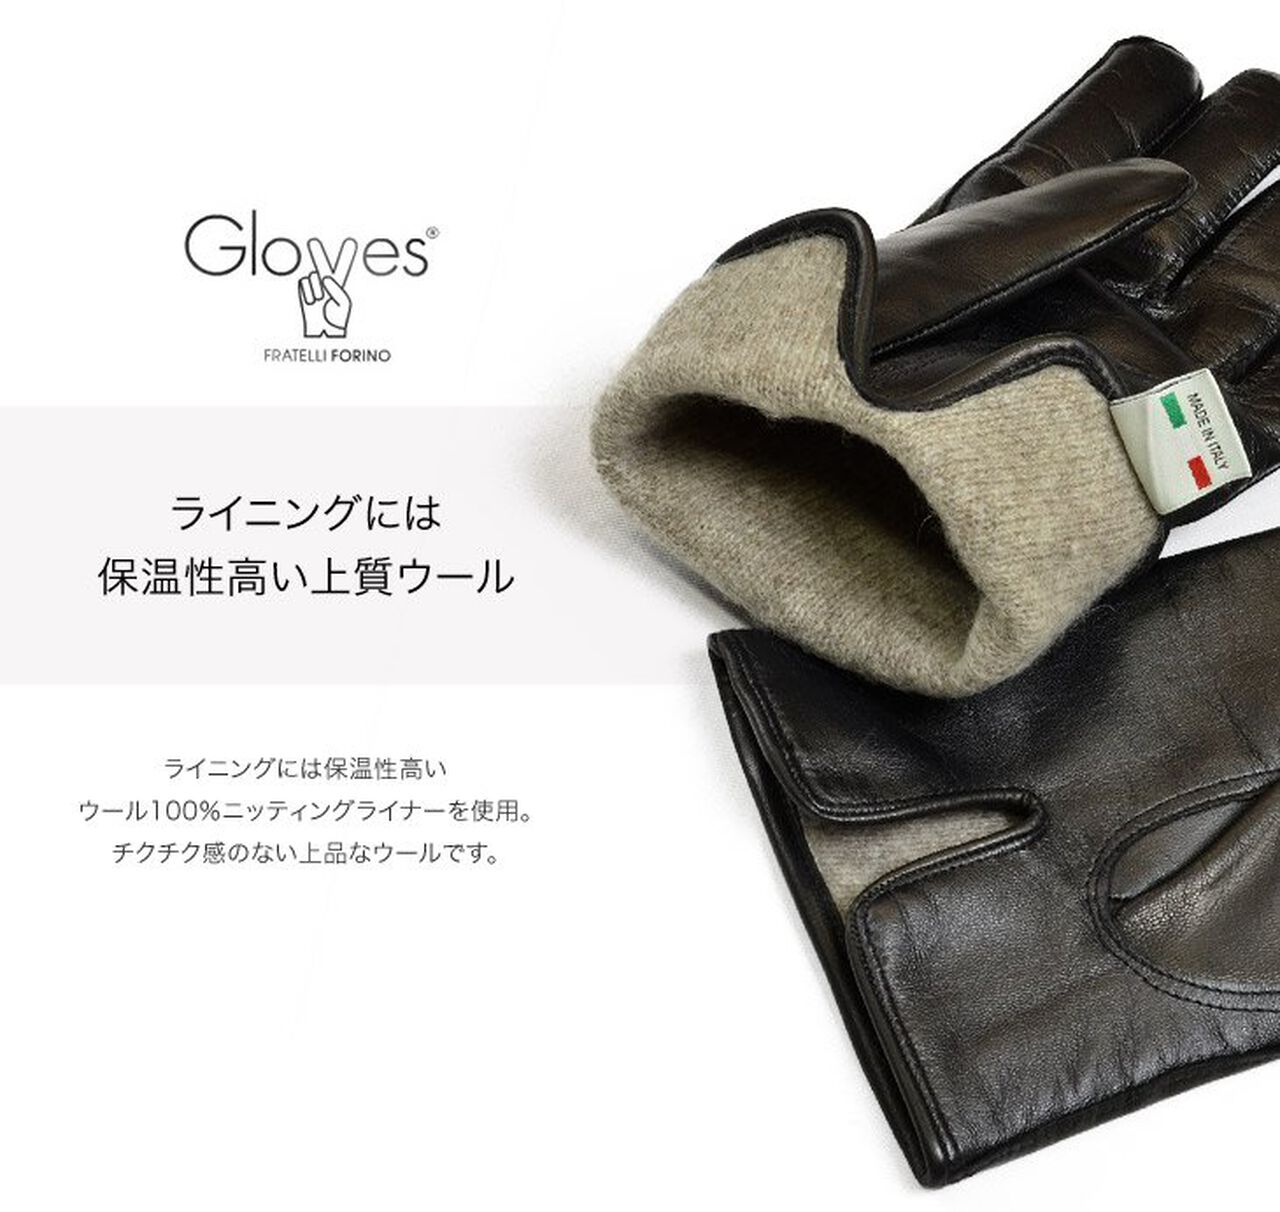 78PK-SM Smartphone Lamb Leather Gloves,Black, large image number 6